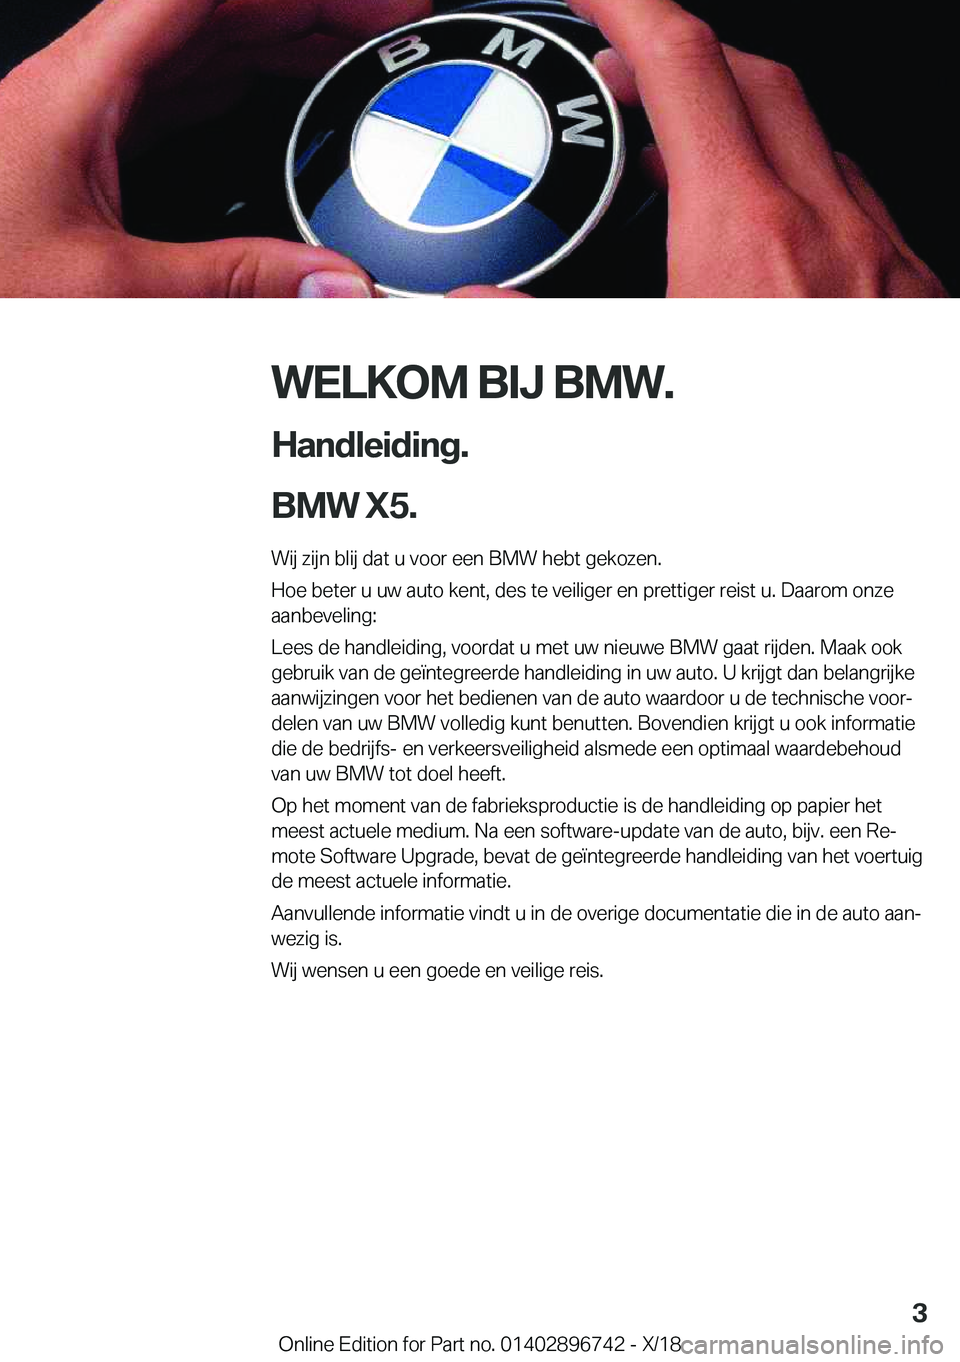 BMW X5 2019  Instructieboekjes (in Dutch) �W�E�L�K�O�M��B�I�J��B�M�W�.
�H�a�n�d�l�e�i�d�i�n�g�.
�B�M�W��X�5�. �W�i�j��z�i�j�n��b�l�i�j��d�a�t��u��v�o�o�r��e�e�n��B�M�W��h�e�b�t��g�e�k�o�z�e�n�.�H�o�e��b�e�t�e�r��u��u�w��a�u�t�